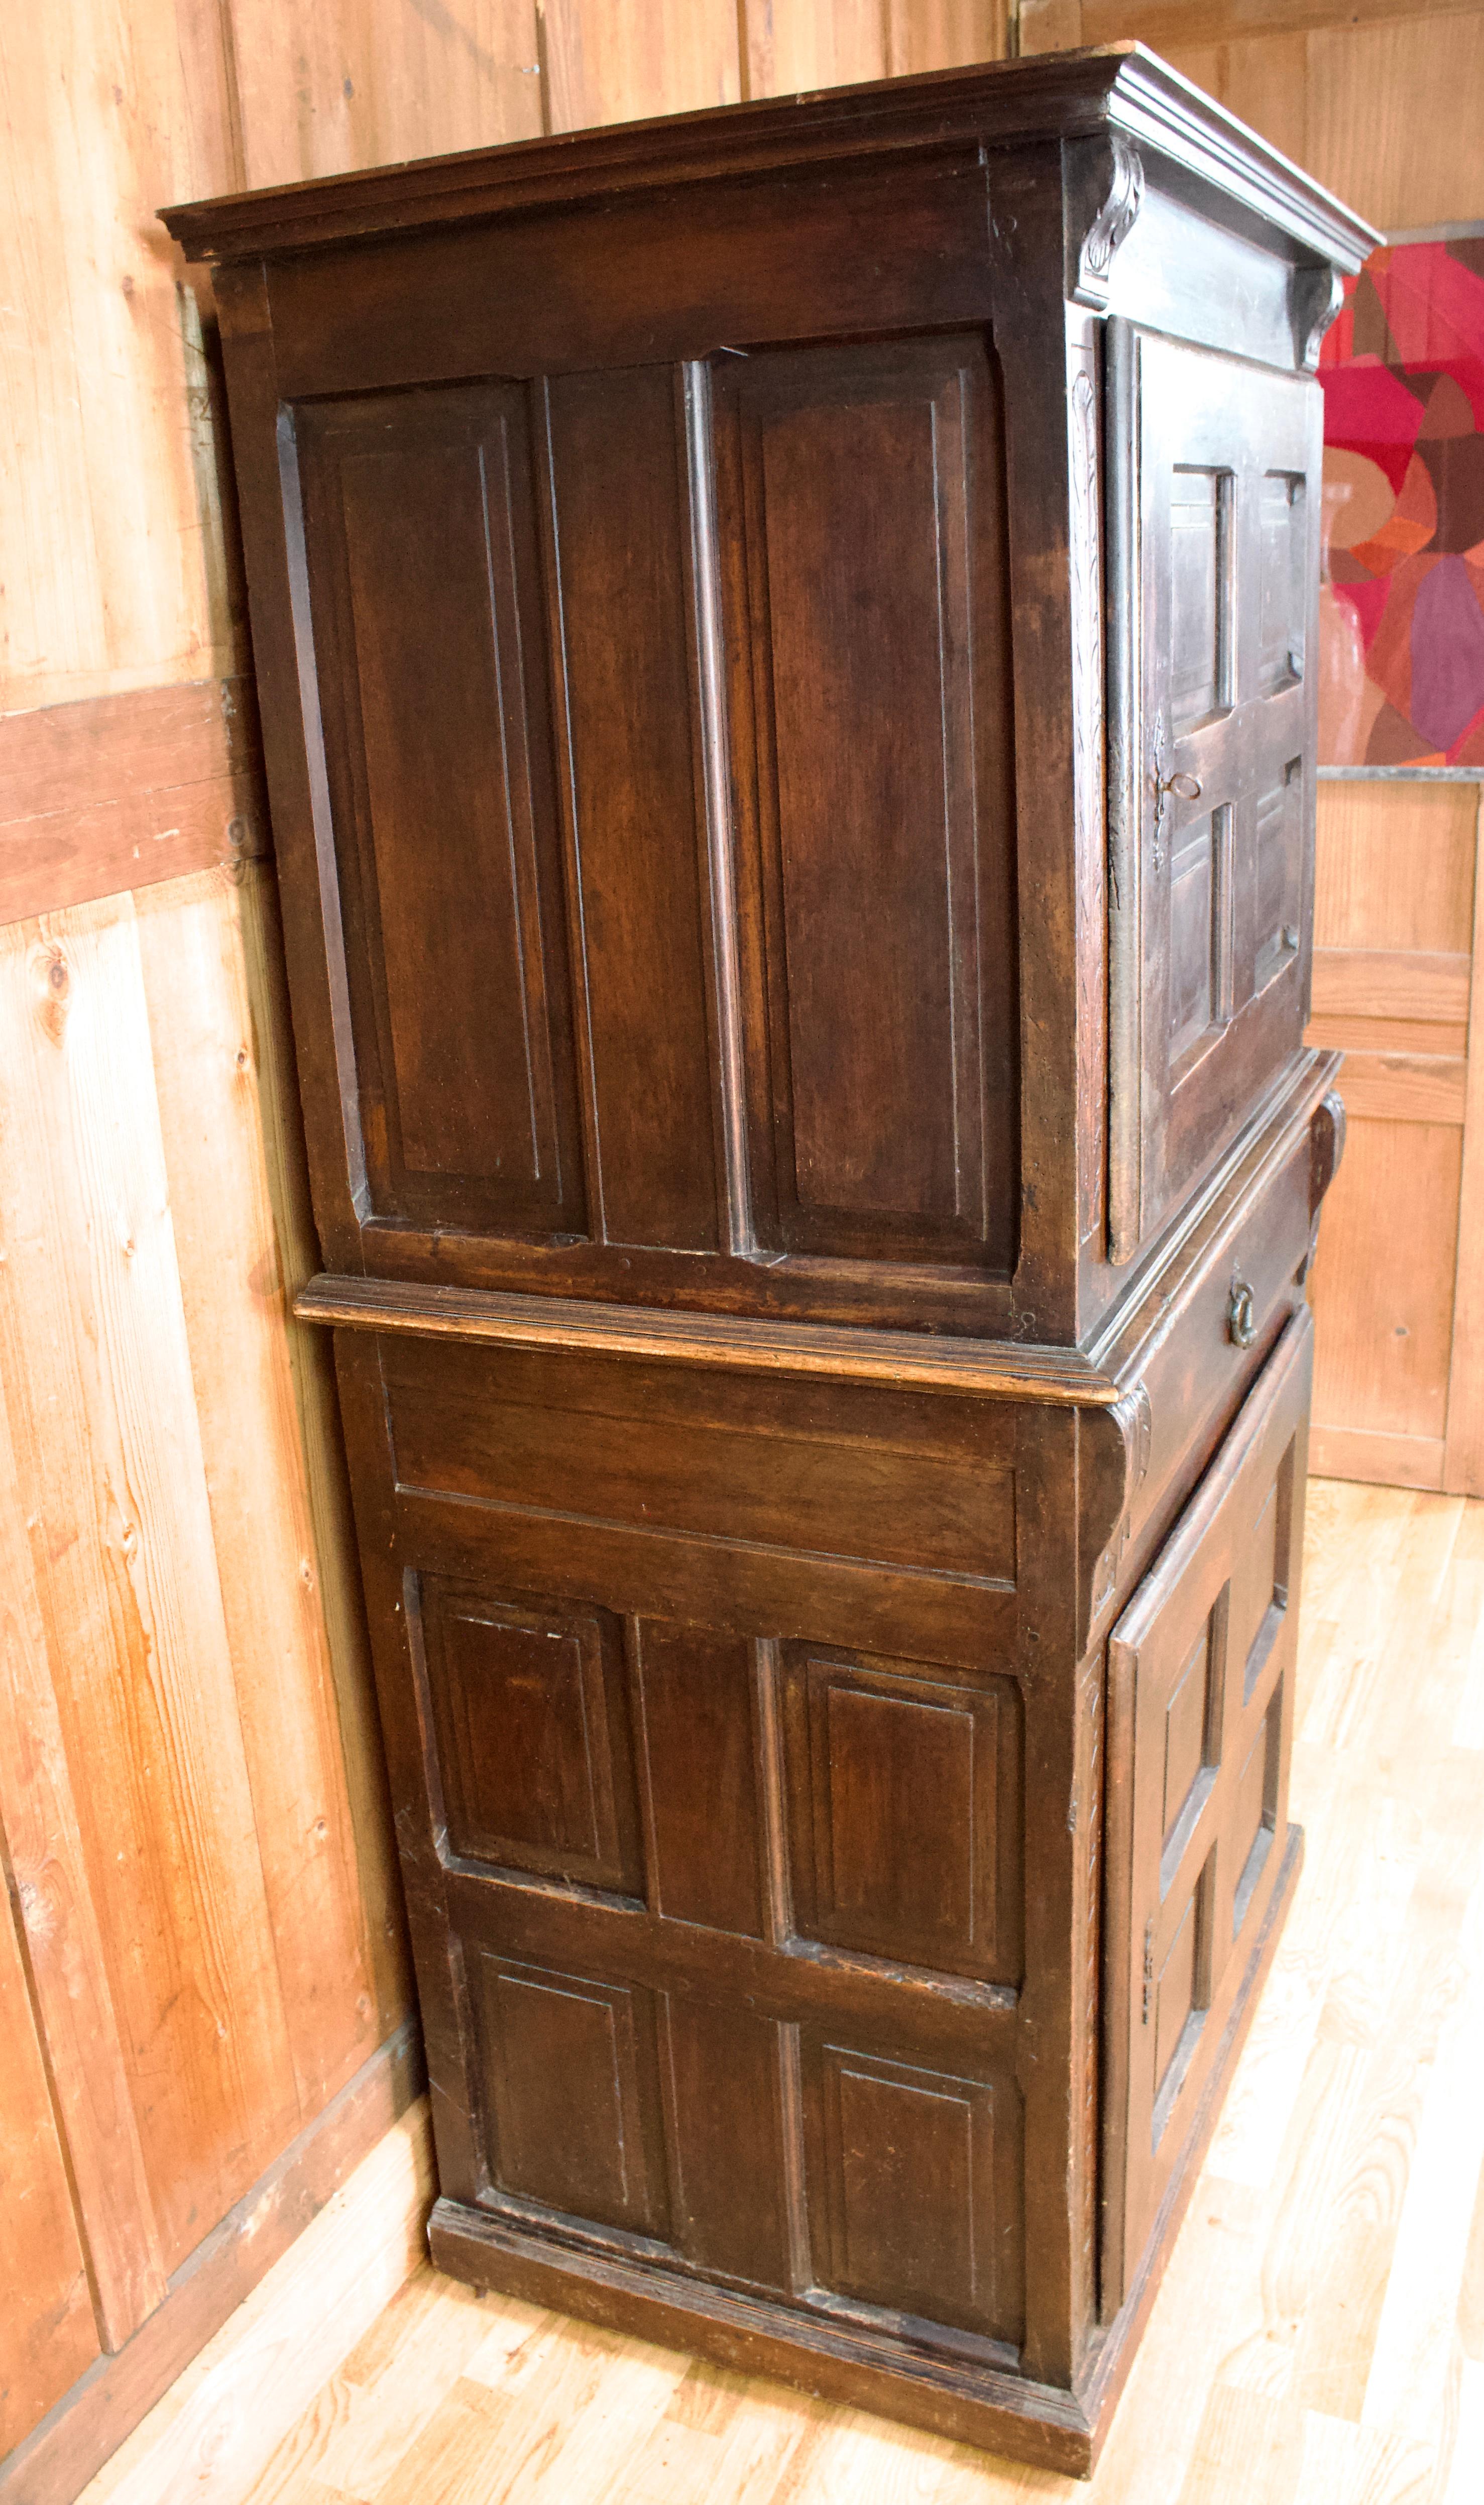 Cabinet d'époque Louis XIII, en bois sculpté, ouvrant à quatre portes à panneaux et un tiroir dans la partie centrale, celui-ci avec une très belle poignée en métal ciselé. Les montants du meuble sont décorés de motifs végétaux et se terminent dans